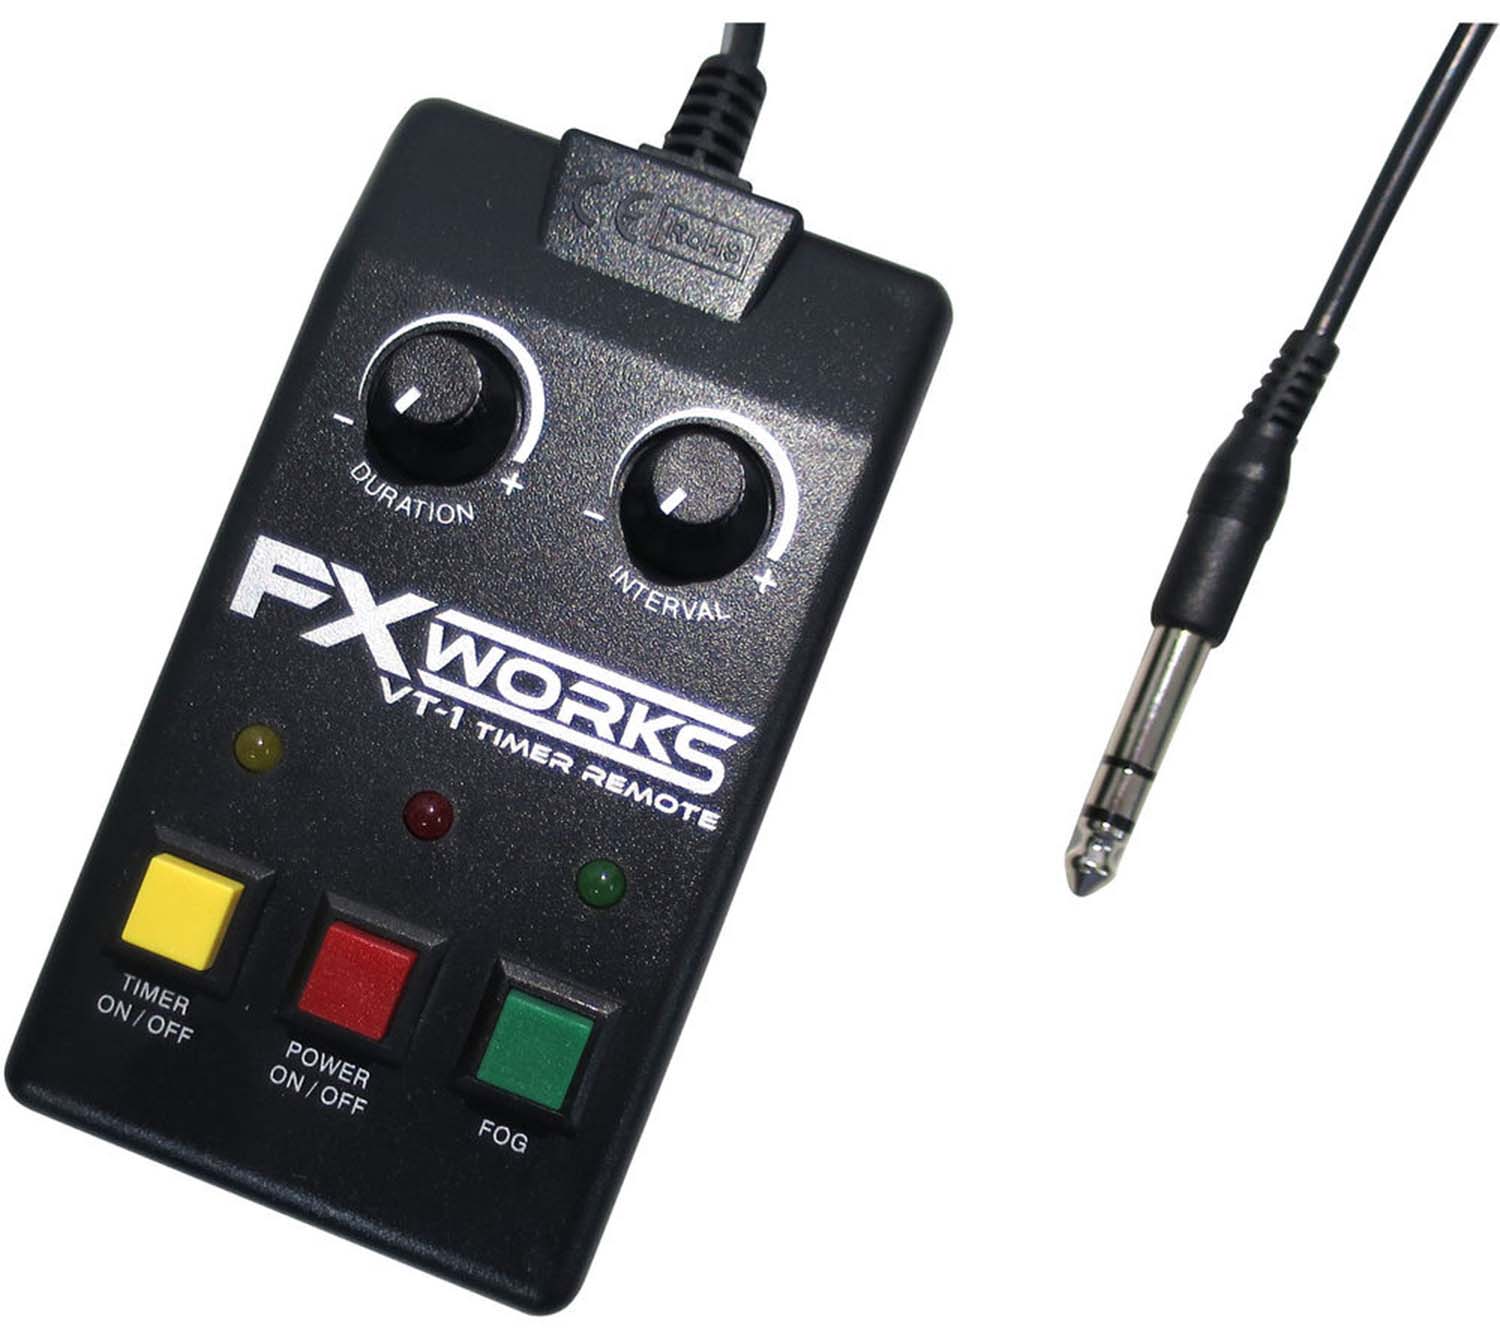 Antari VT-1 FX Works Timer Remote for FXW-1000 - Hollywood DJ